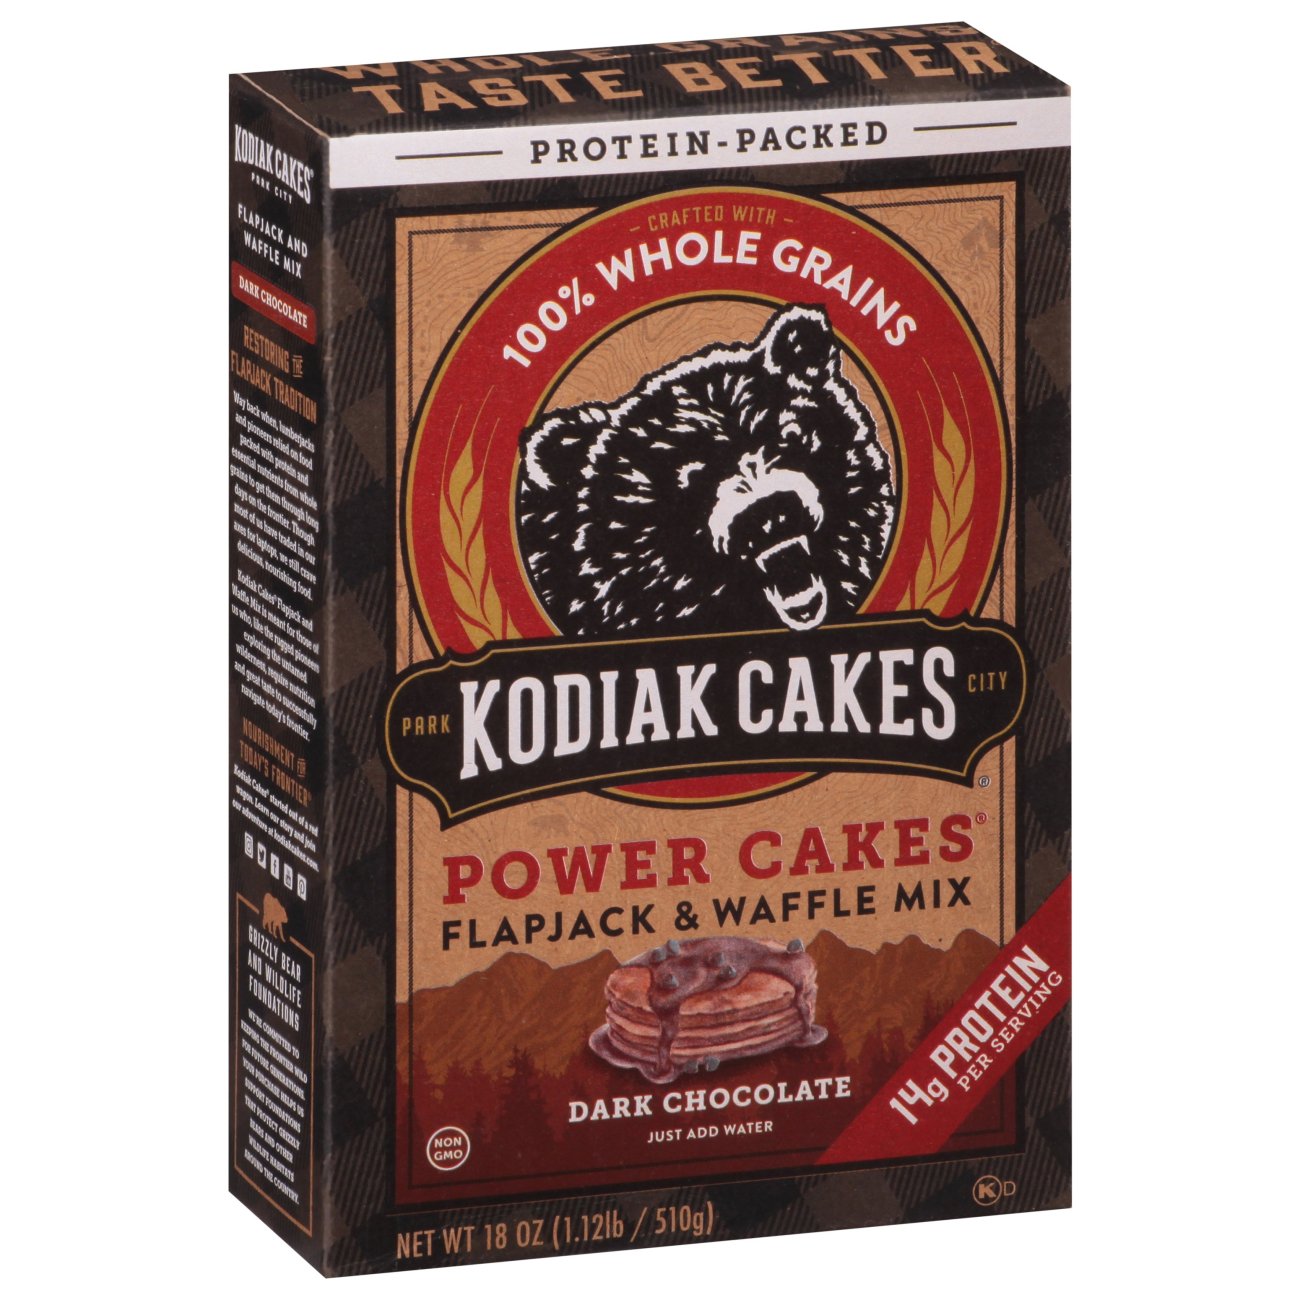 Kodiak cakes waffle recipe on box